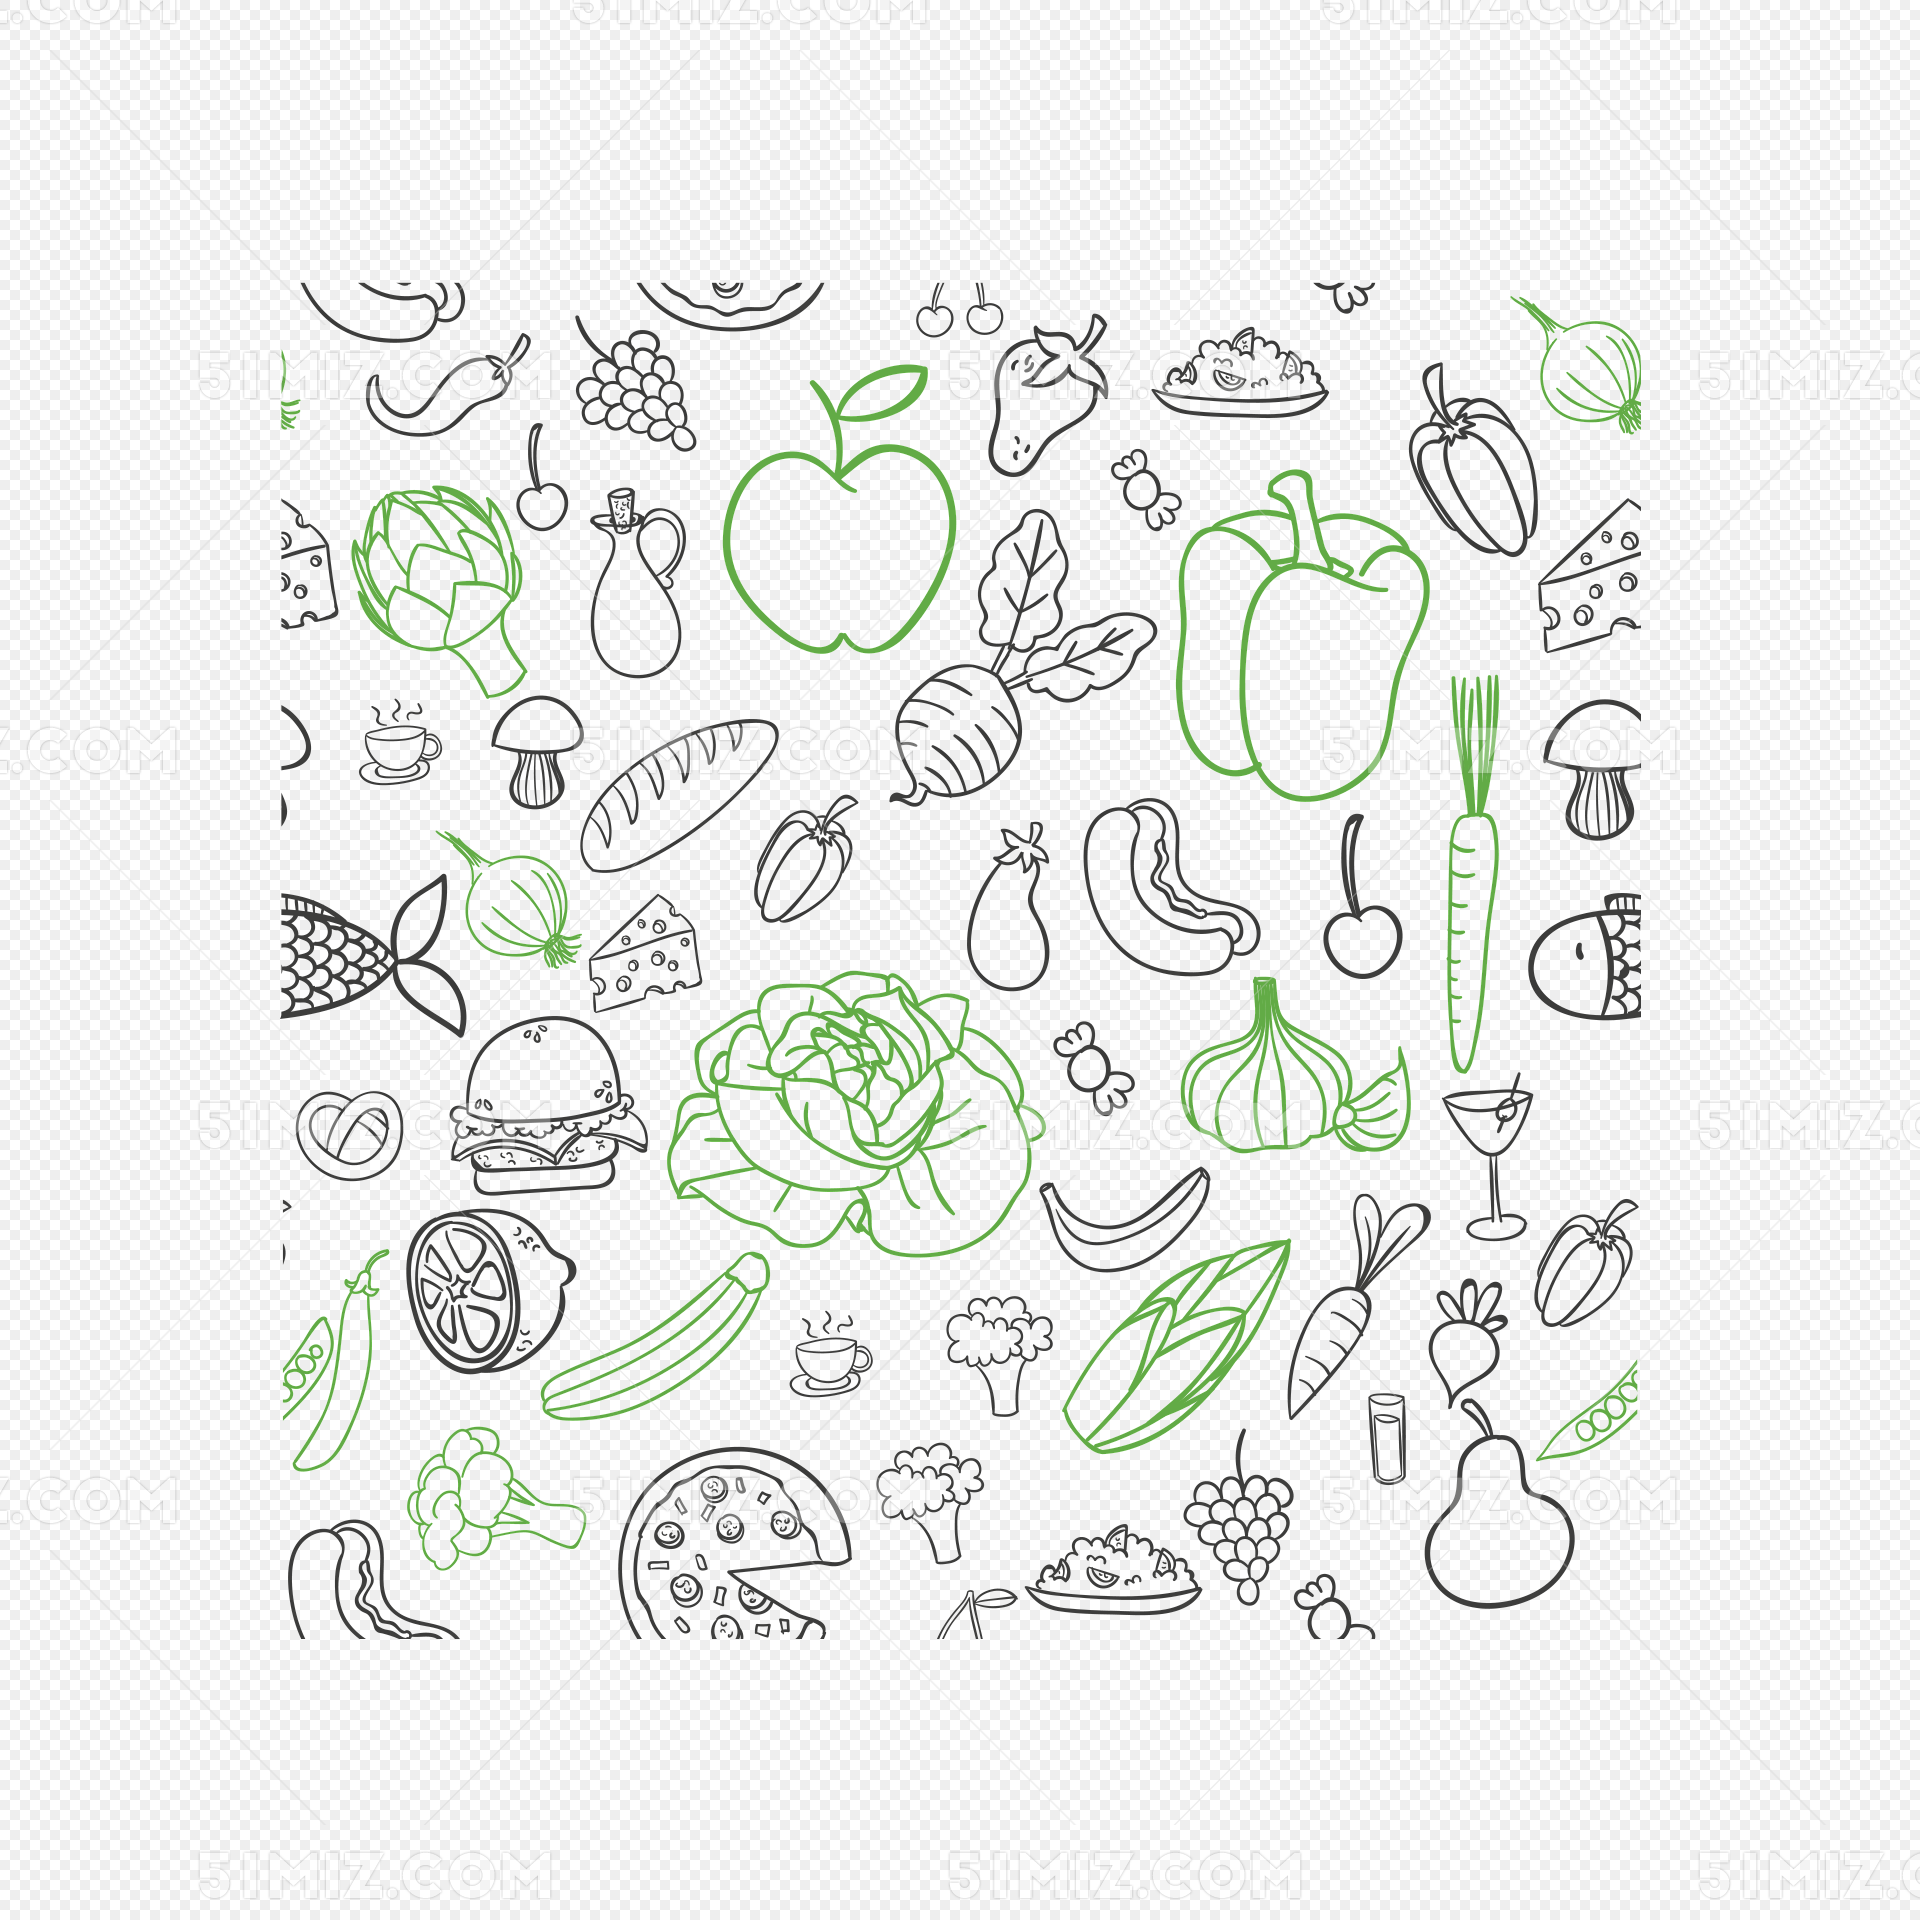 一幅关于蔬菜的简笔画图片 - 学院 - 摸鱼网 - Σ(っ °Д °;)っ 让世界更萌~ mooyuu.com